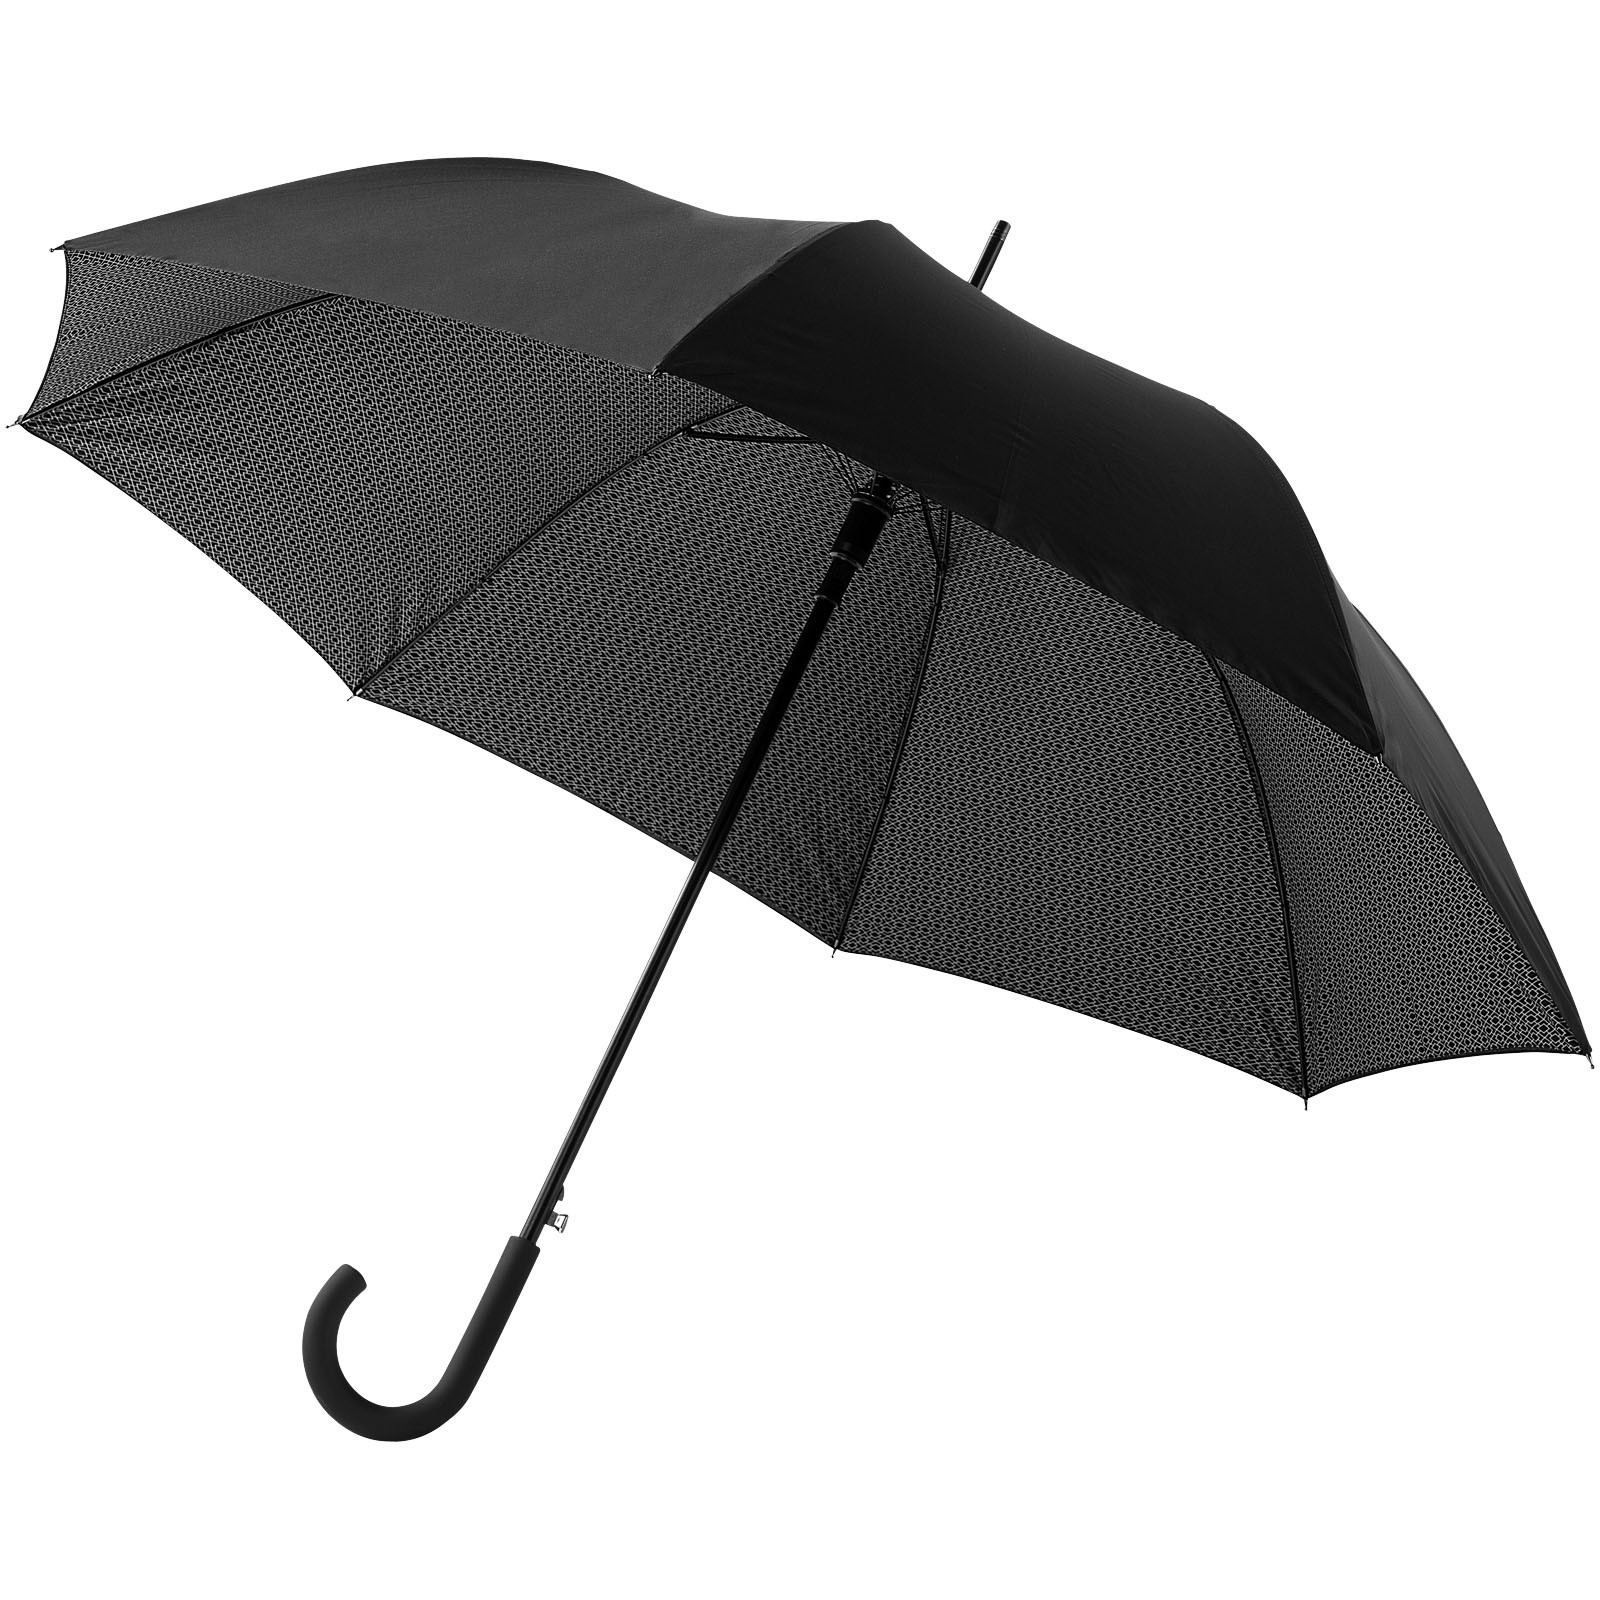 Dvouplášťový deštník 27" Cardew s automatickým otvíráním